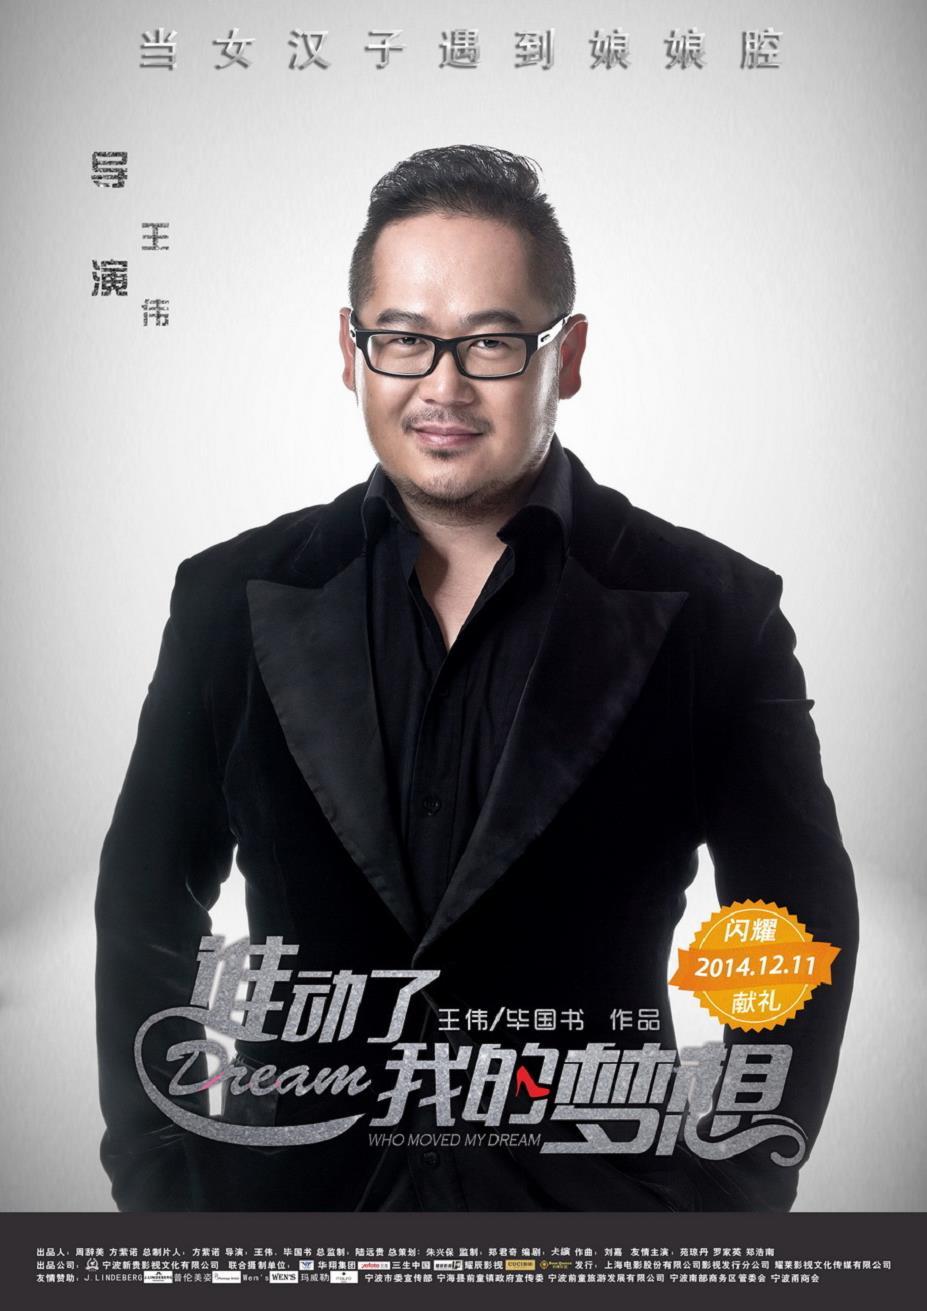 电影《谁动了我的梦想》发布人物海报,《谁动了我的梦想》导演王伟